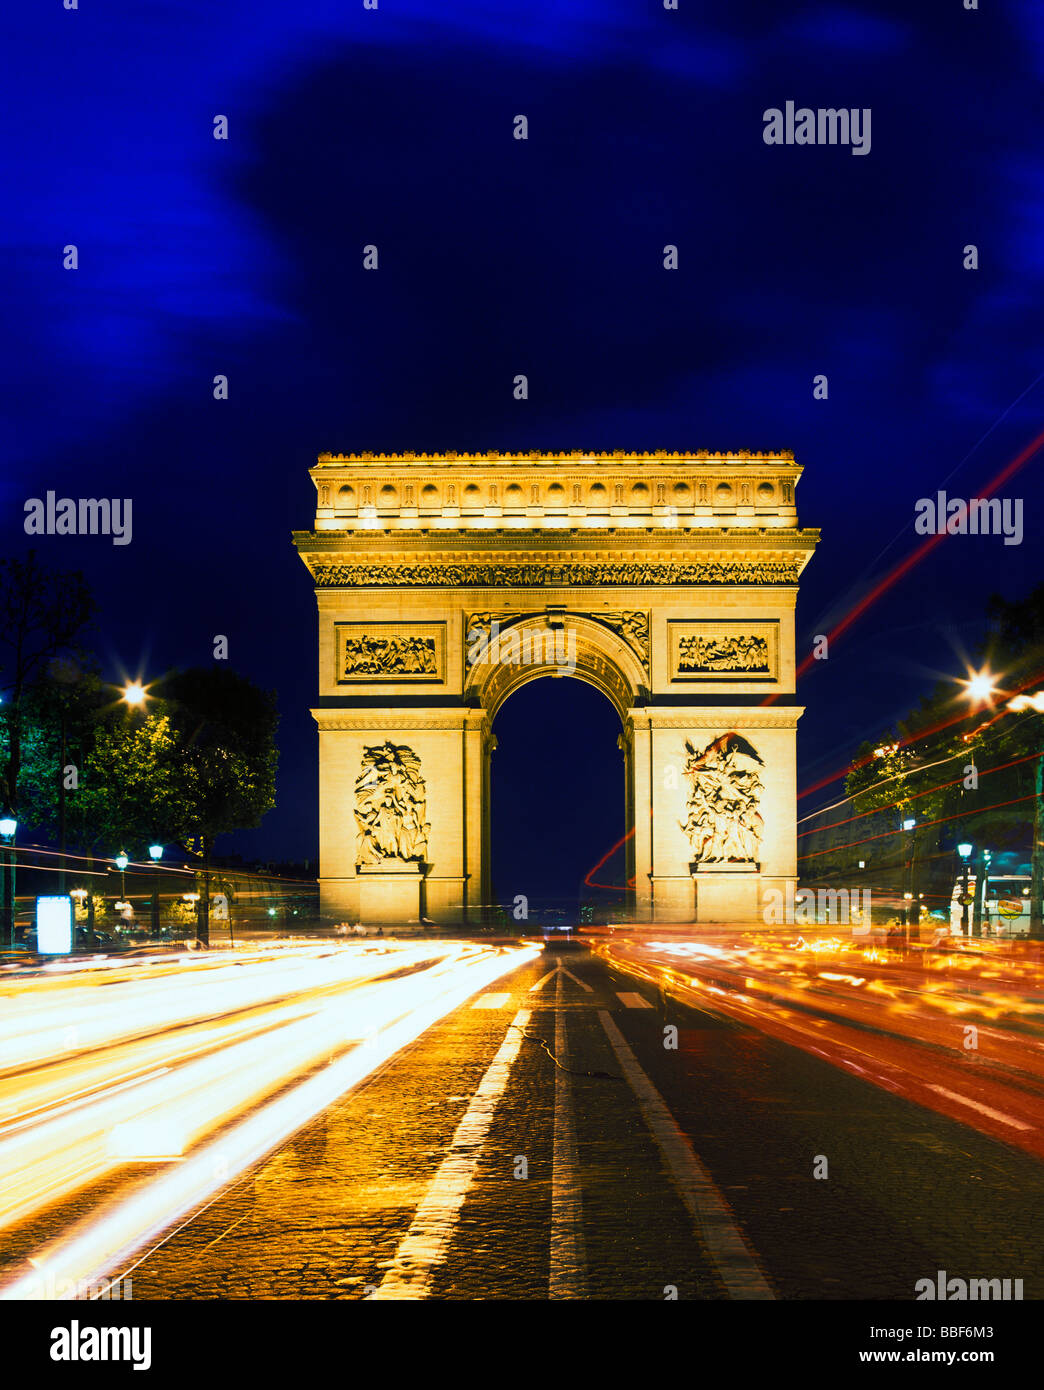 Monument de l'arc de triomphe au soir avenue des Champs Elysées de paris france Banque D'Images